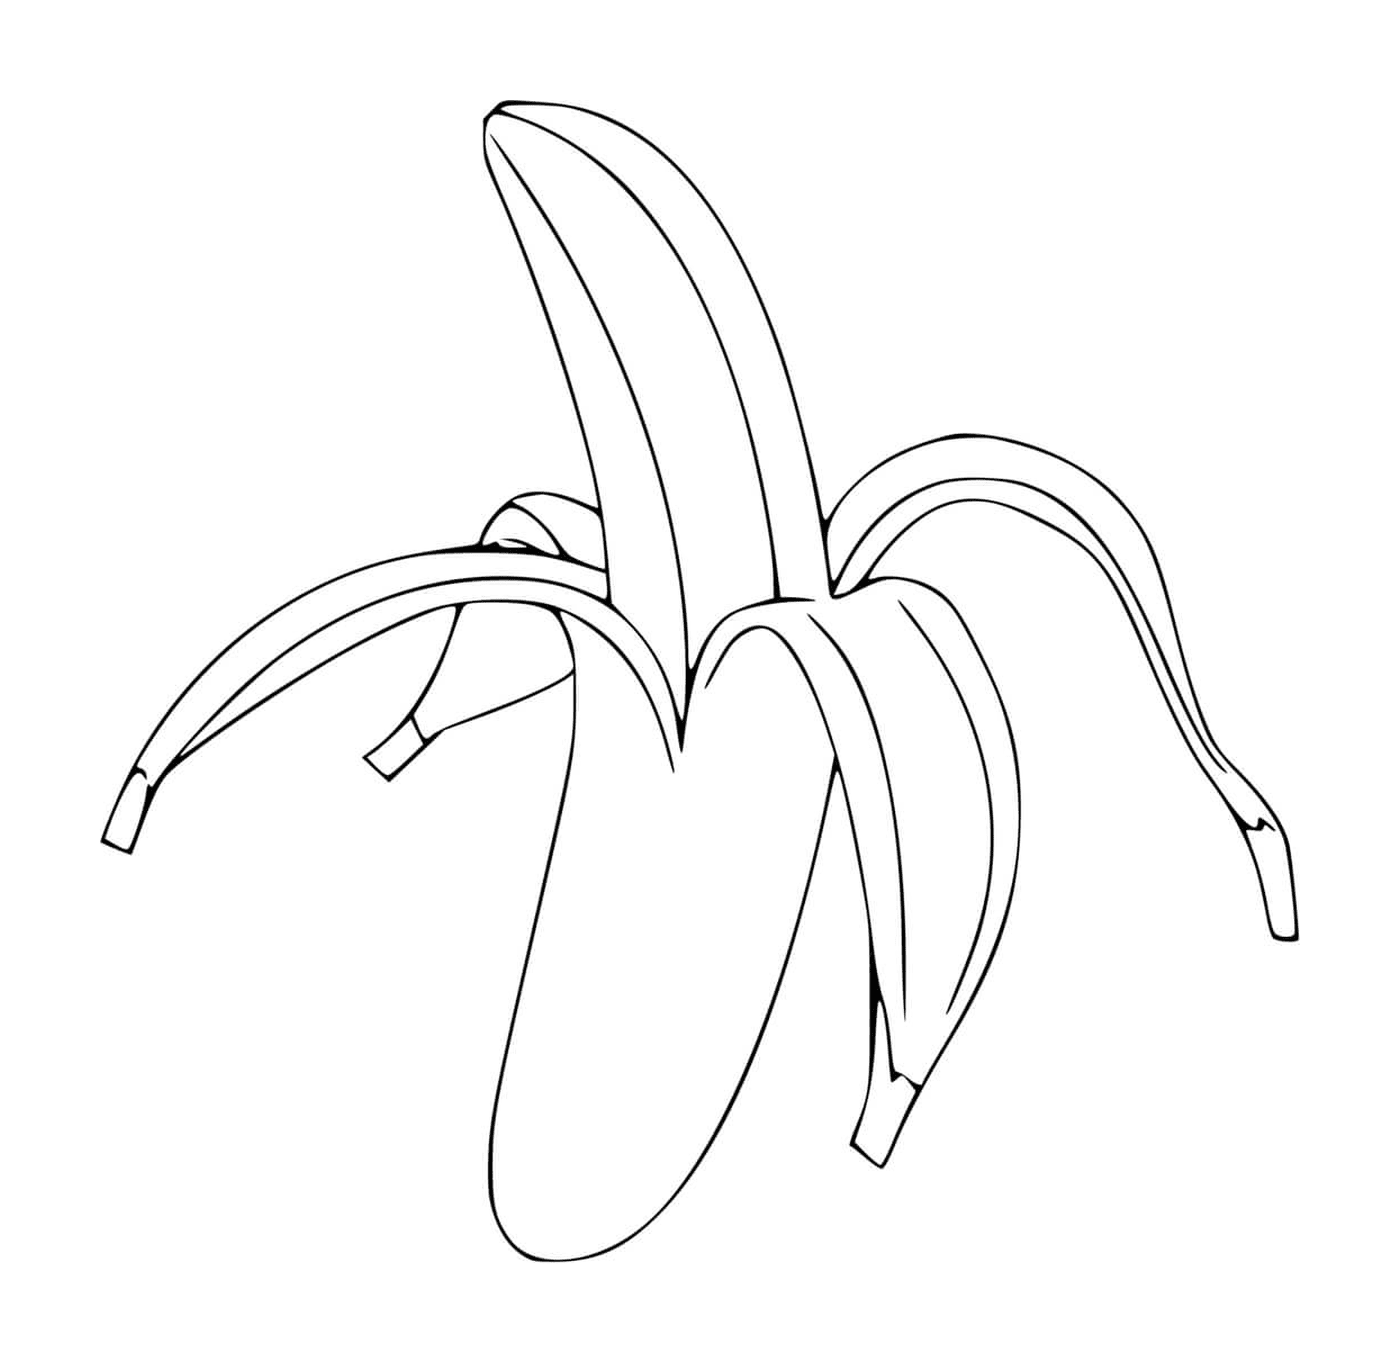   Une banane non pelée 